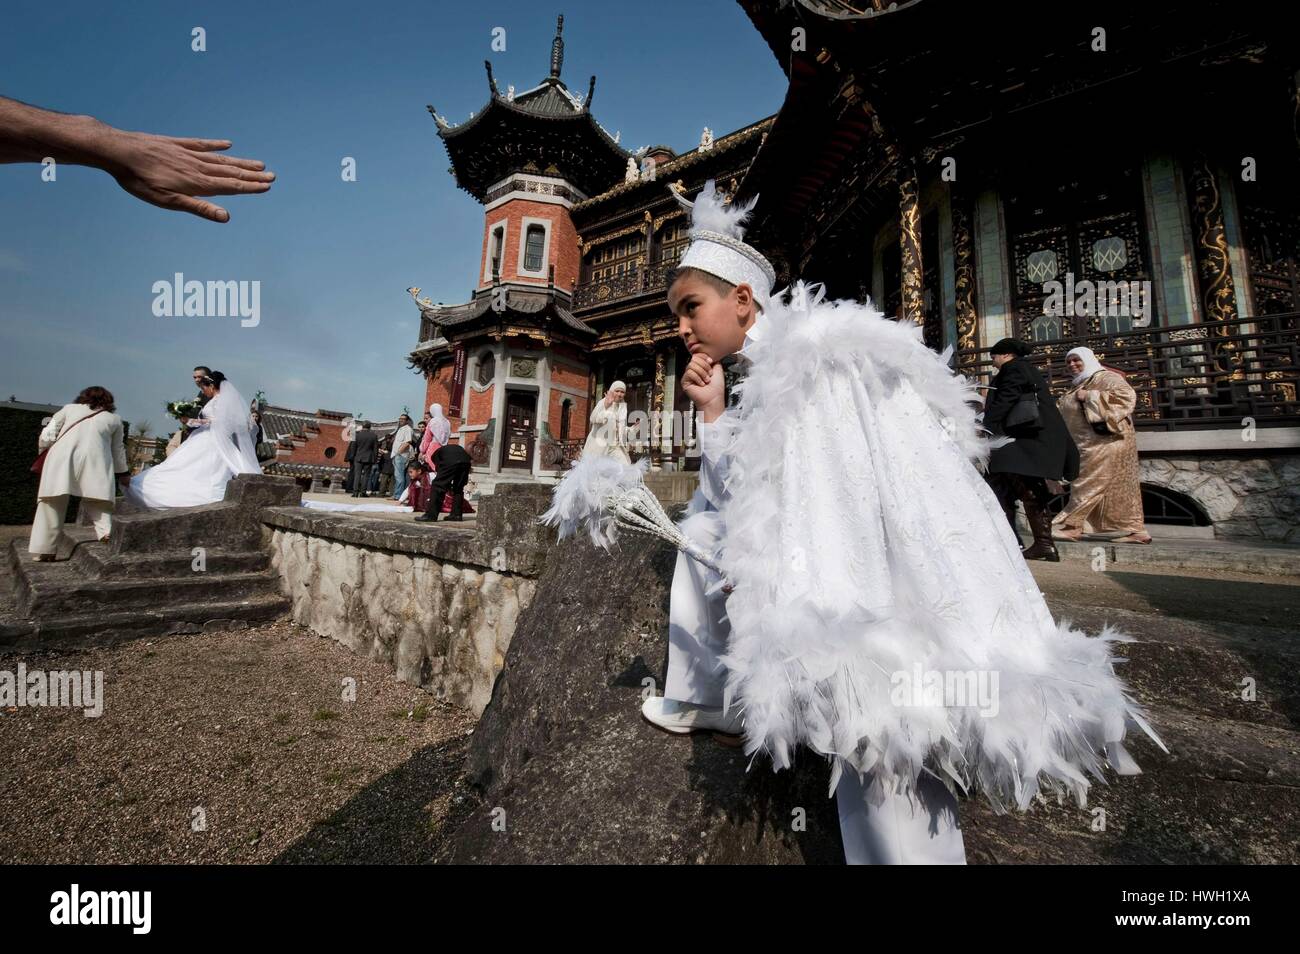 Belgien, Brüssel, Brüssel kosmopolitischen und multikulturellen, der chinesische Pavillon, einer türkischen Familie feiern die Beschneidung ihres Sohnes Stockfoto